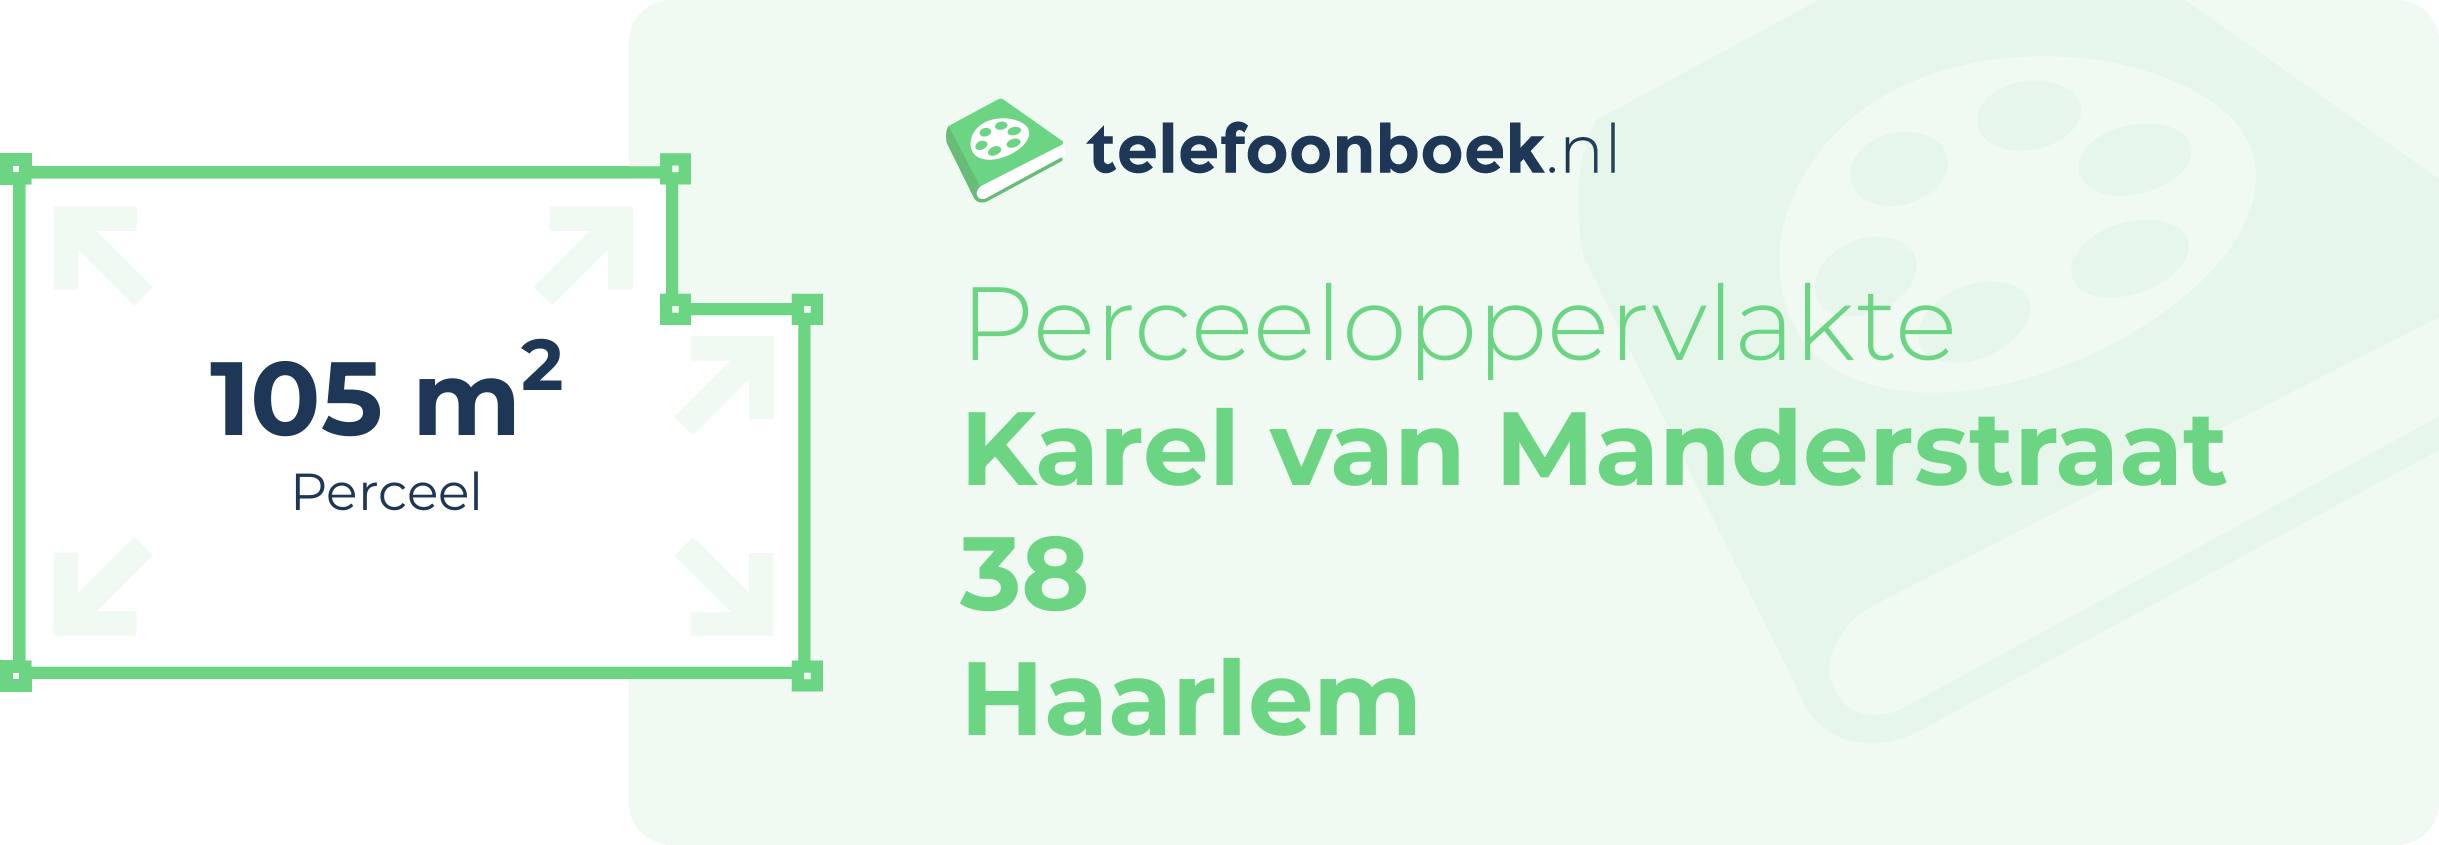 Perceeloppervlakte Karel Van Manderstraat 38 Haarlem